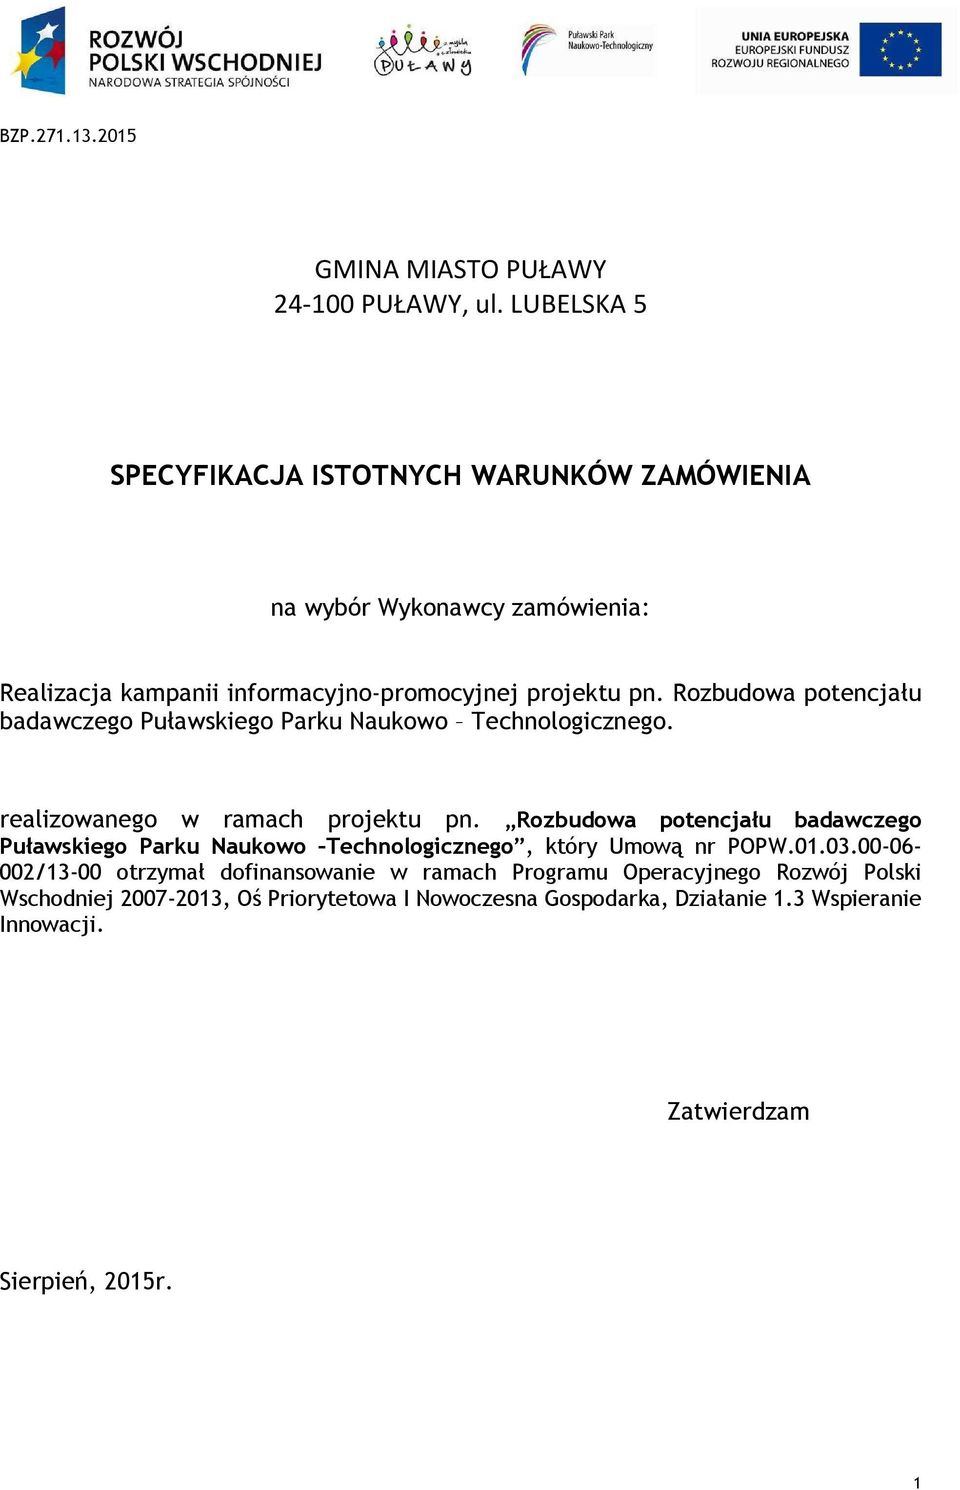 Rozbudowa potencjału badawczego Puławskiego Parku Naukowo Technologicznego. realizowanego w ramach projektu pn.